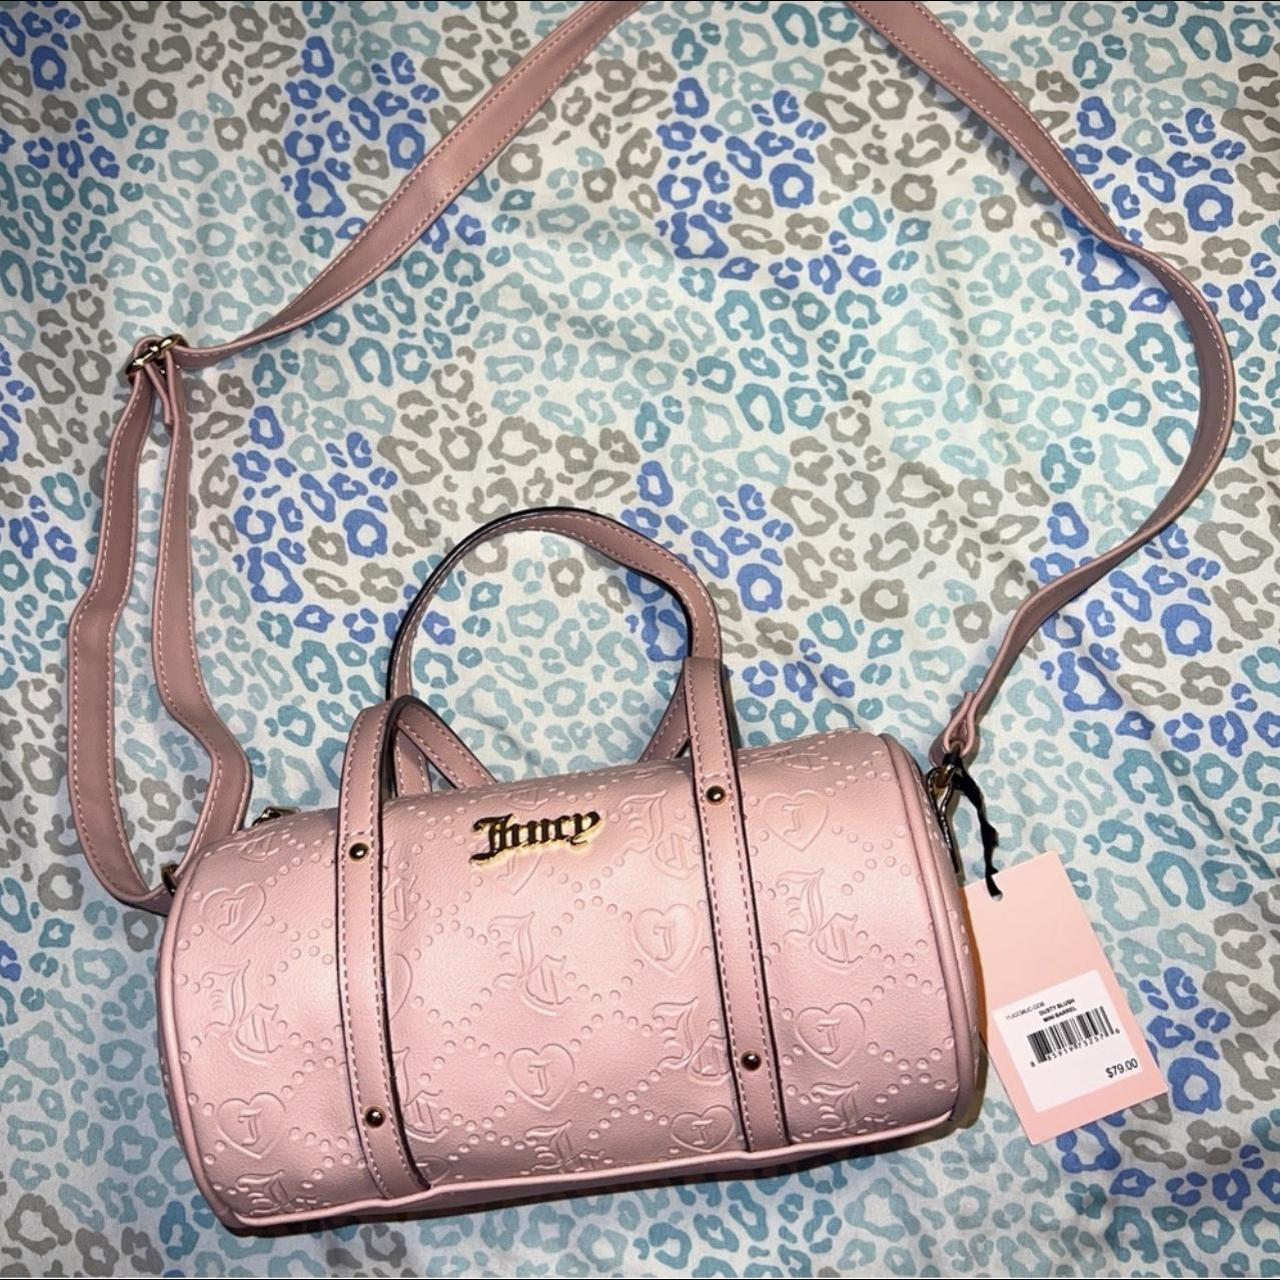 Juicy couture speedy handbag purse cross body tote - Depop